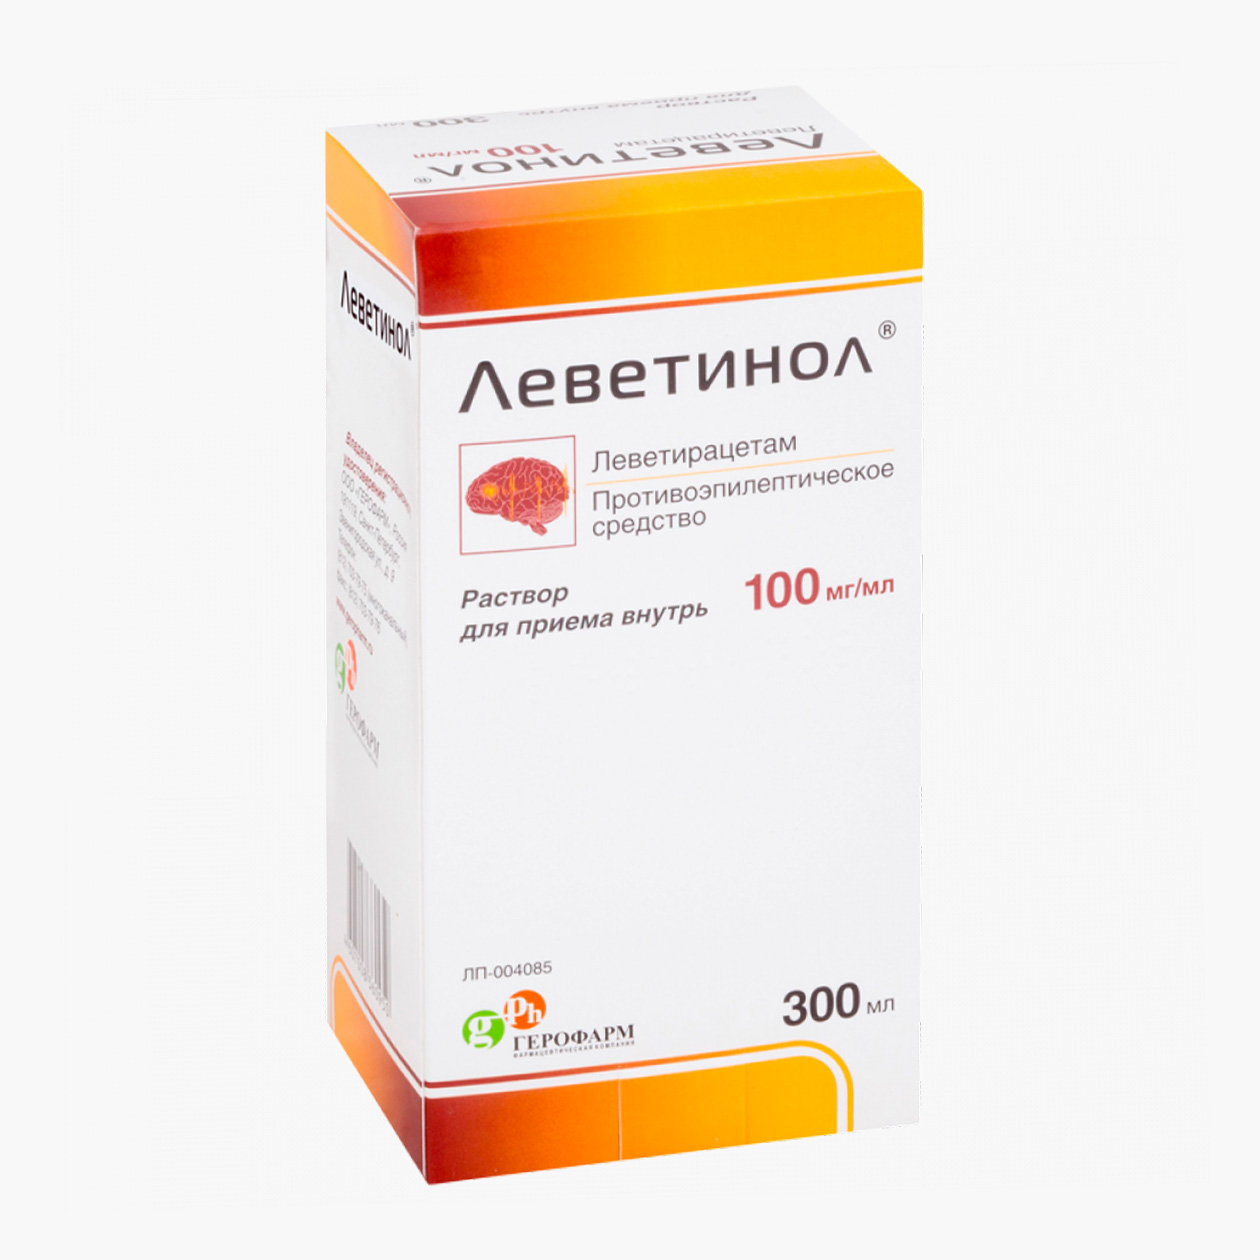 За 100 мл раствора леветирацетама для приема внутрь придется отдать от 1600 ₽. Источник: asna.ru